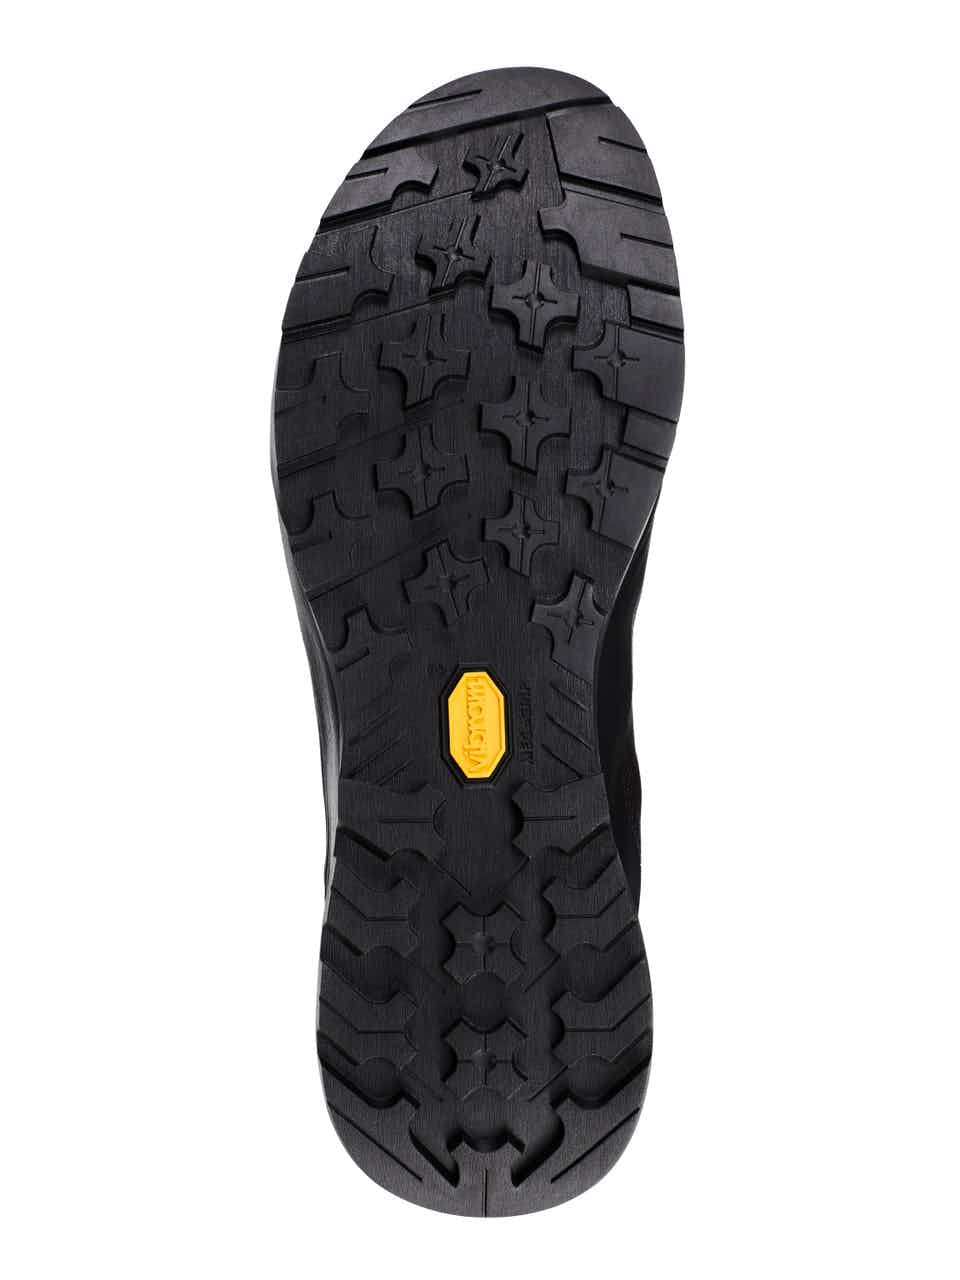 Chaussures d'approche Konseal FL 2 GORE-TEX Noir/Copie conforme